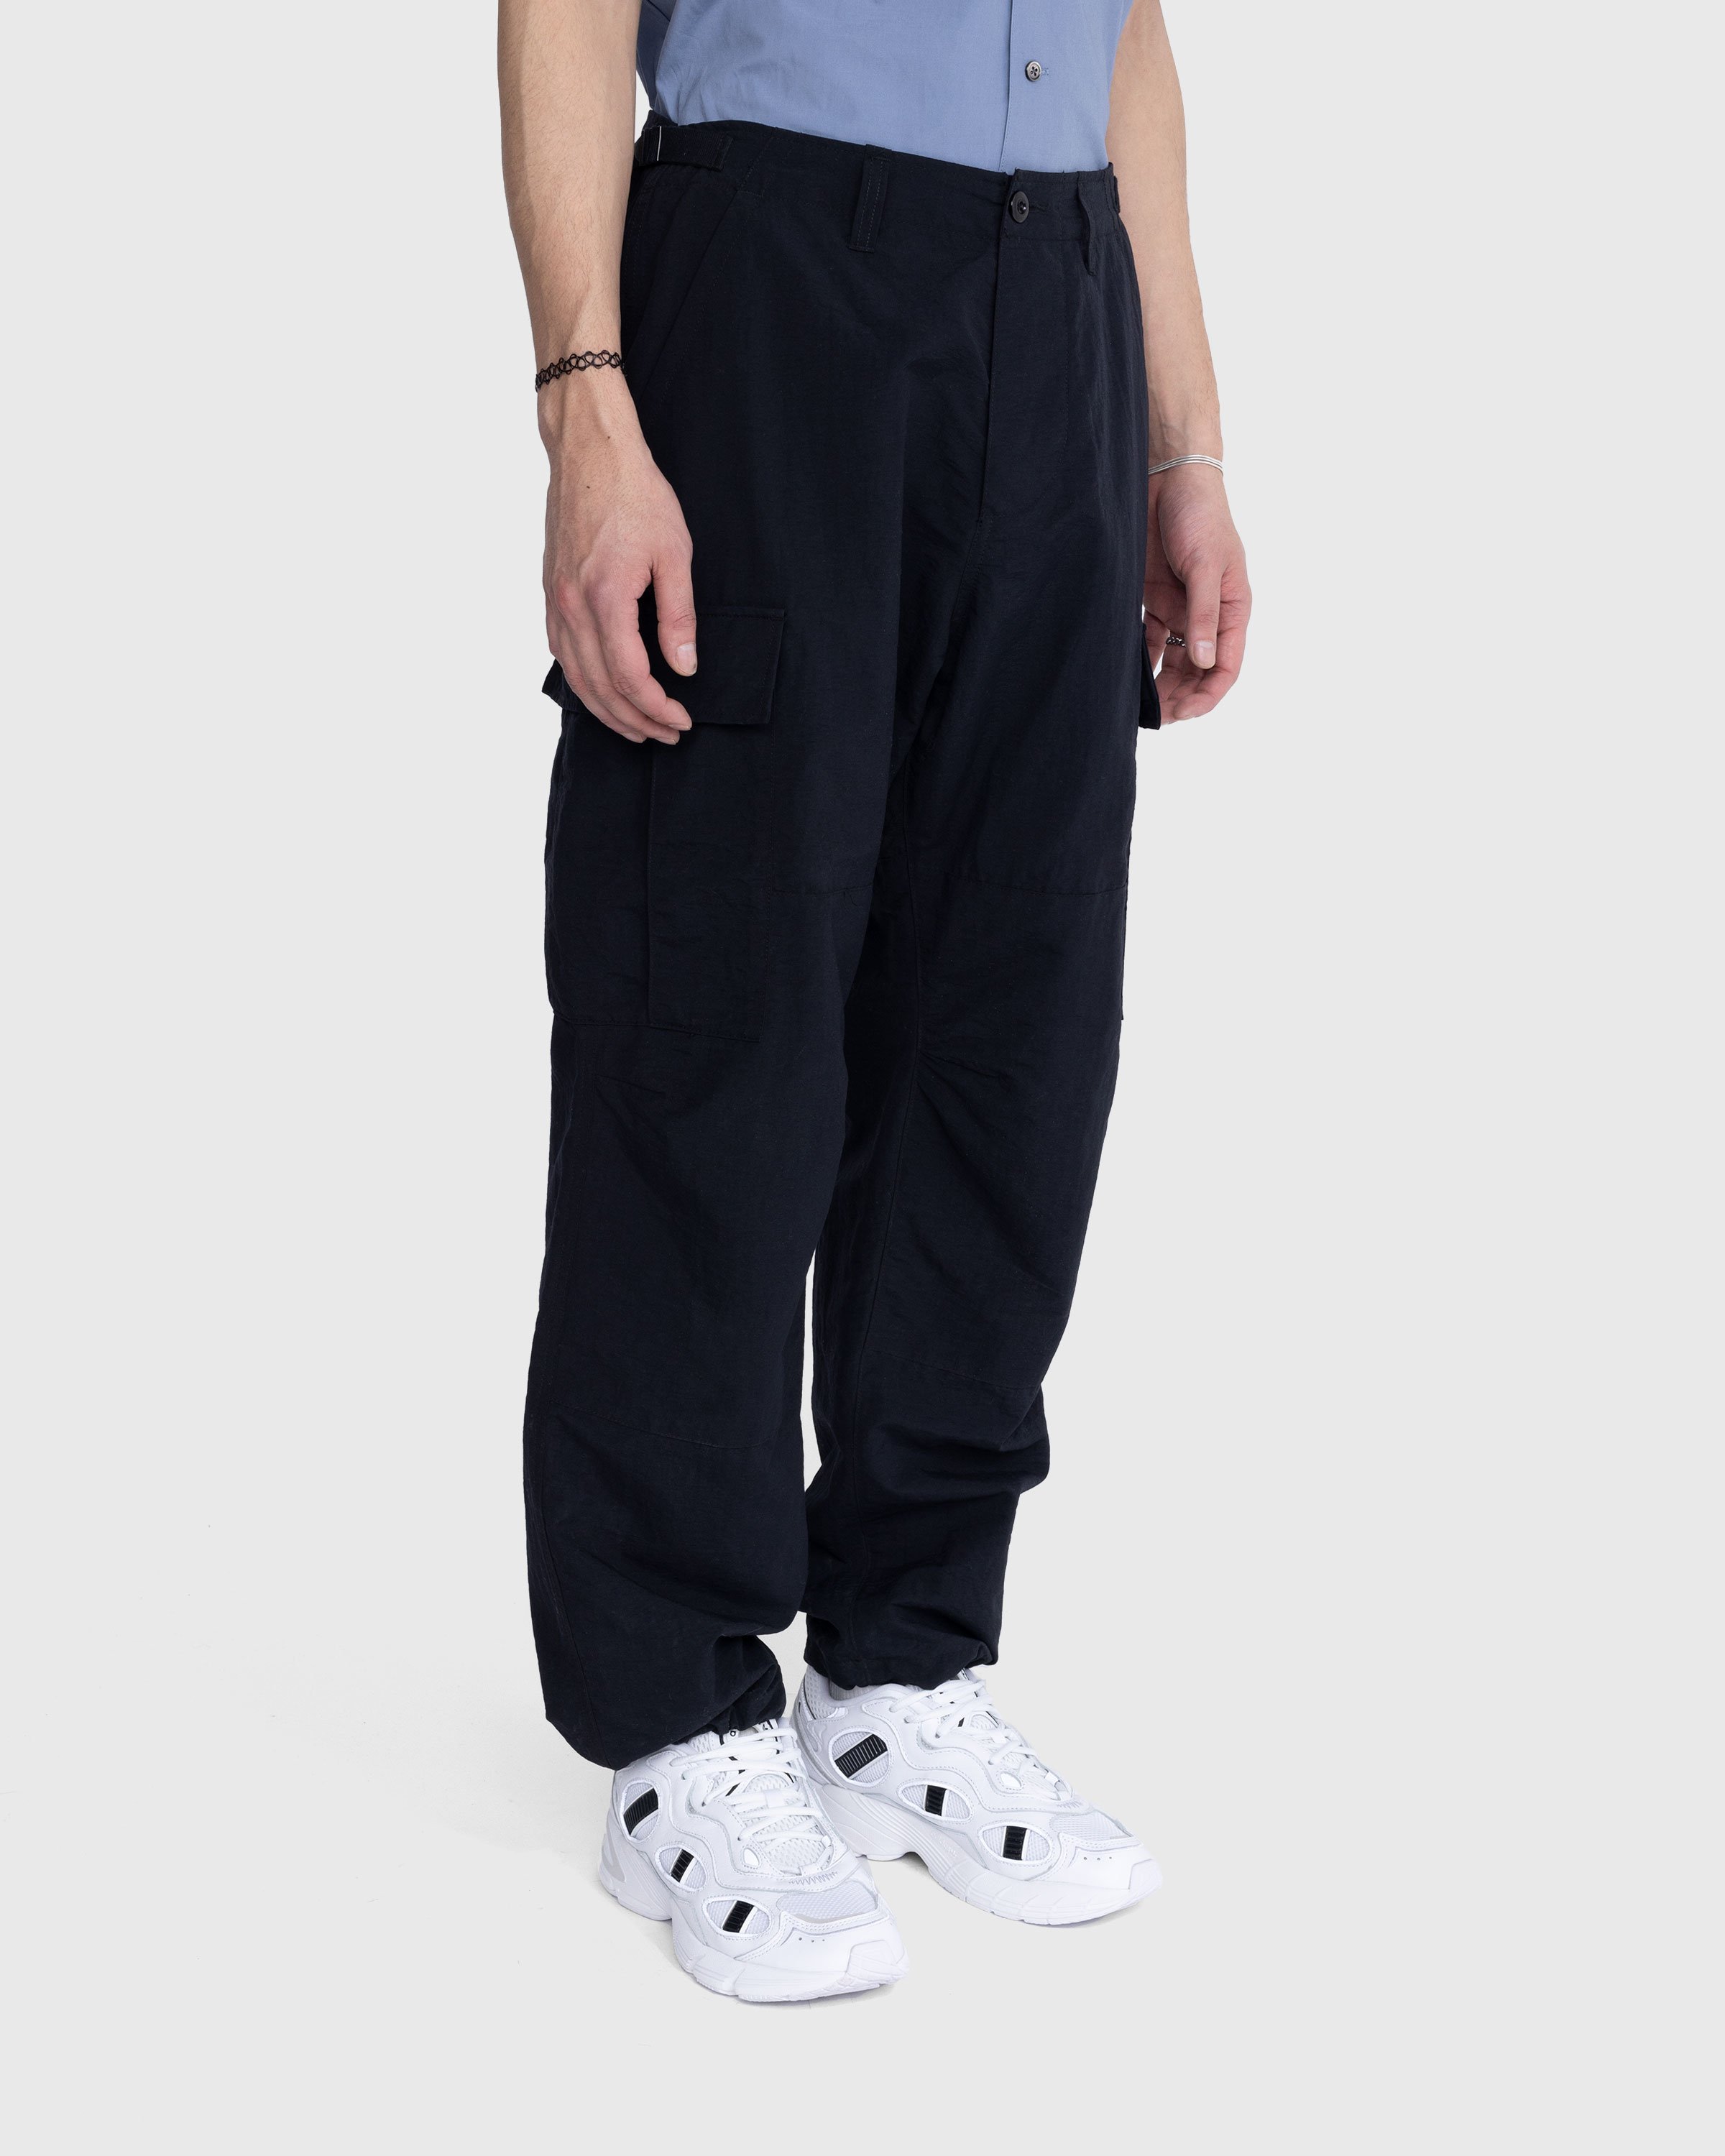 Highsnobiety - Nylon Cargo Pants Black - Clothing - Black - Image 4